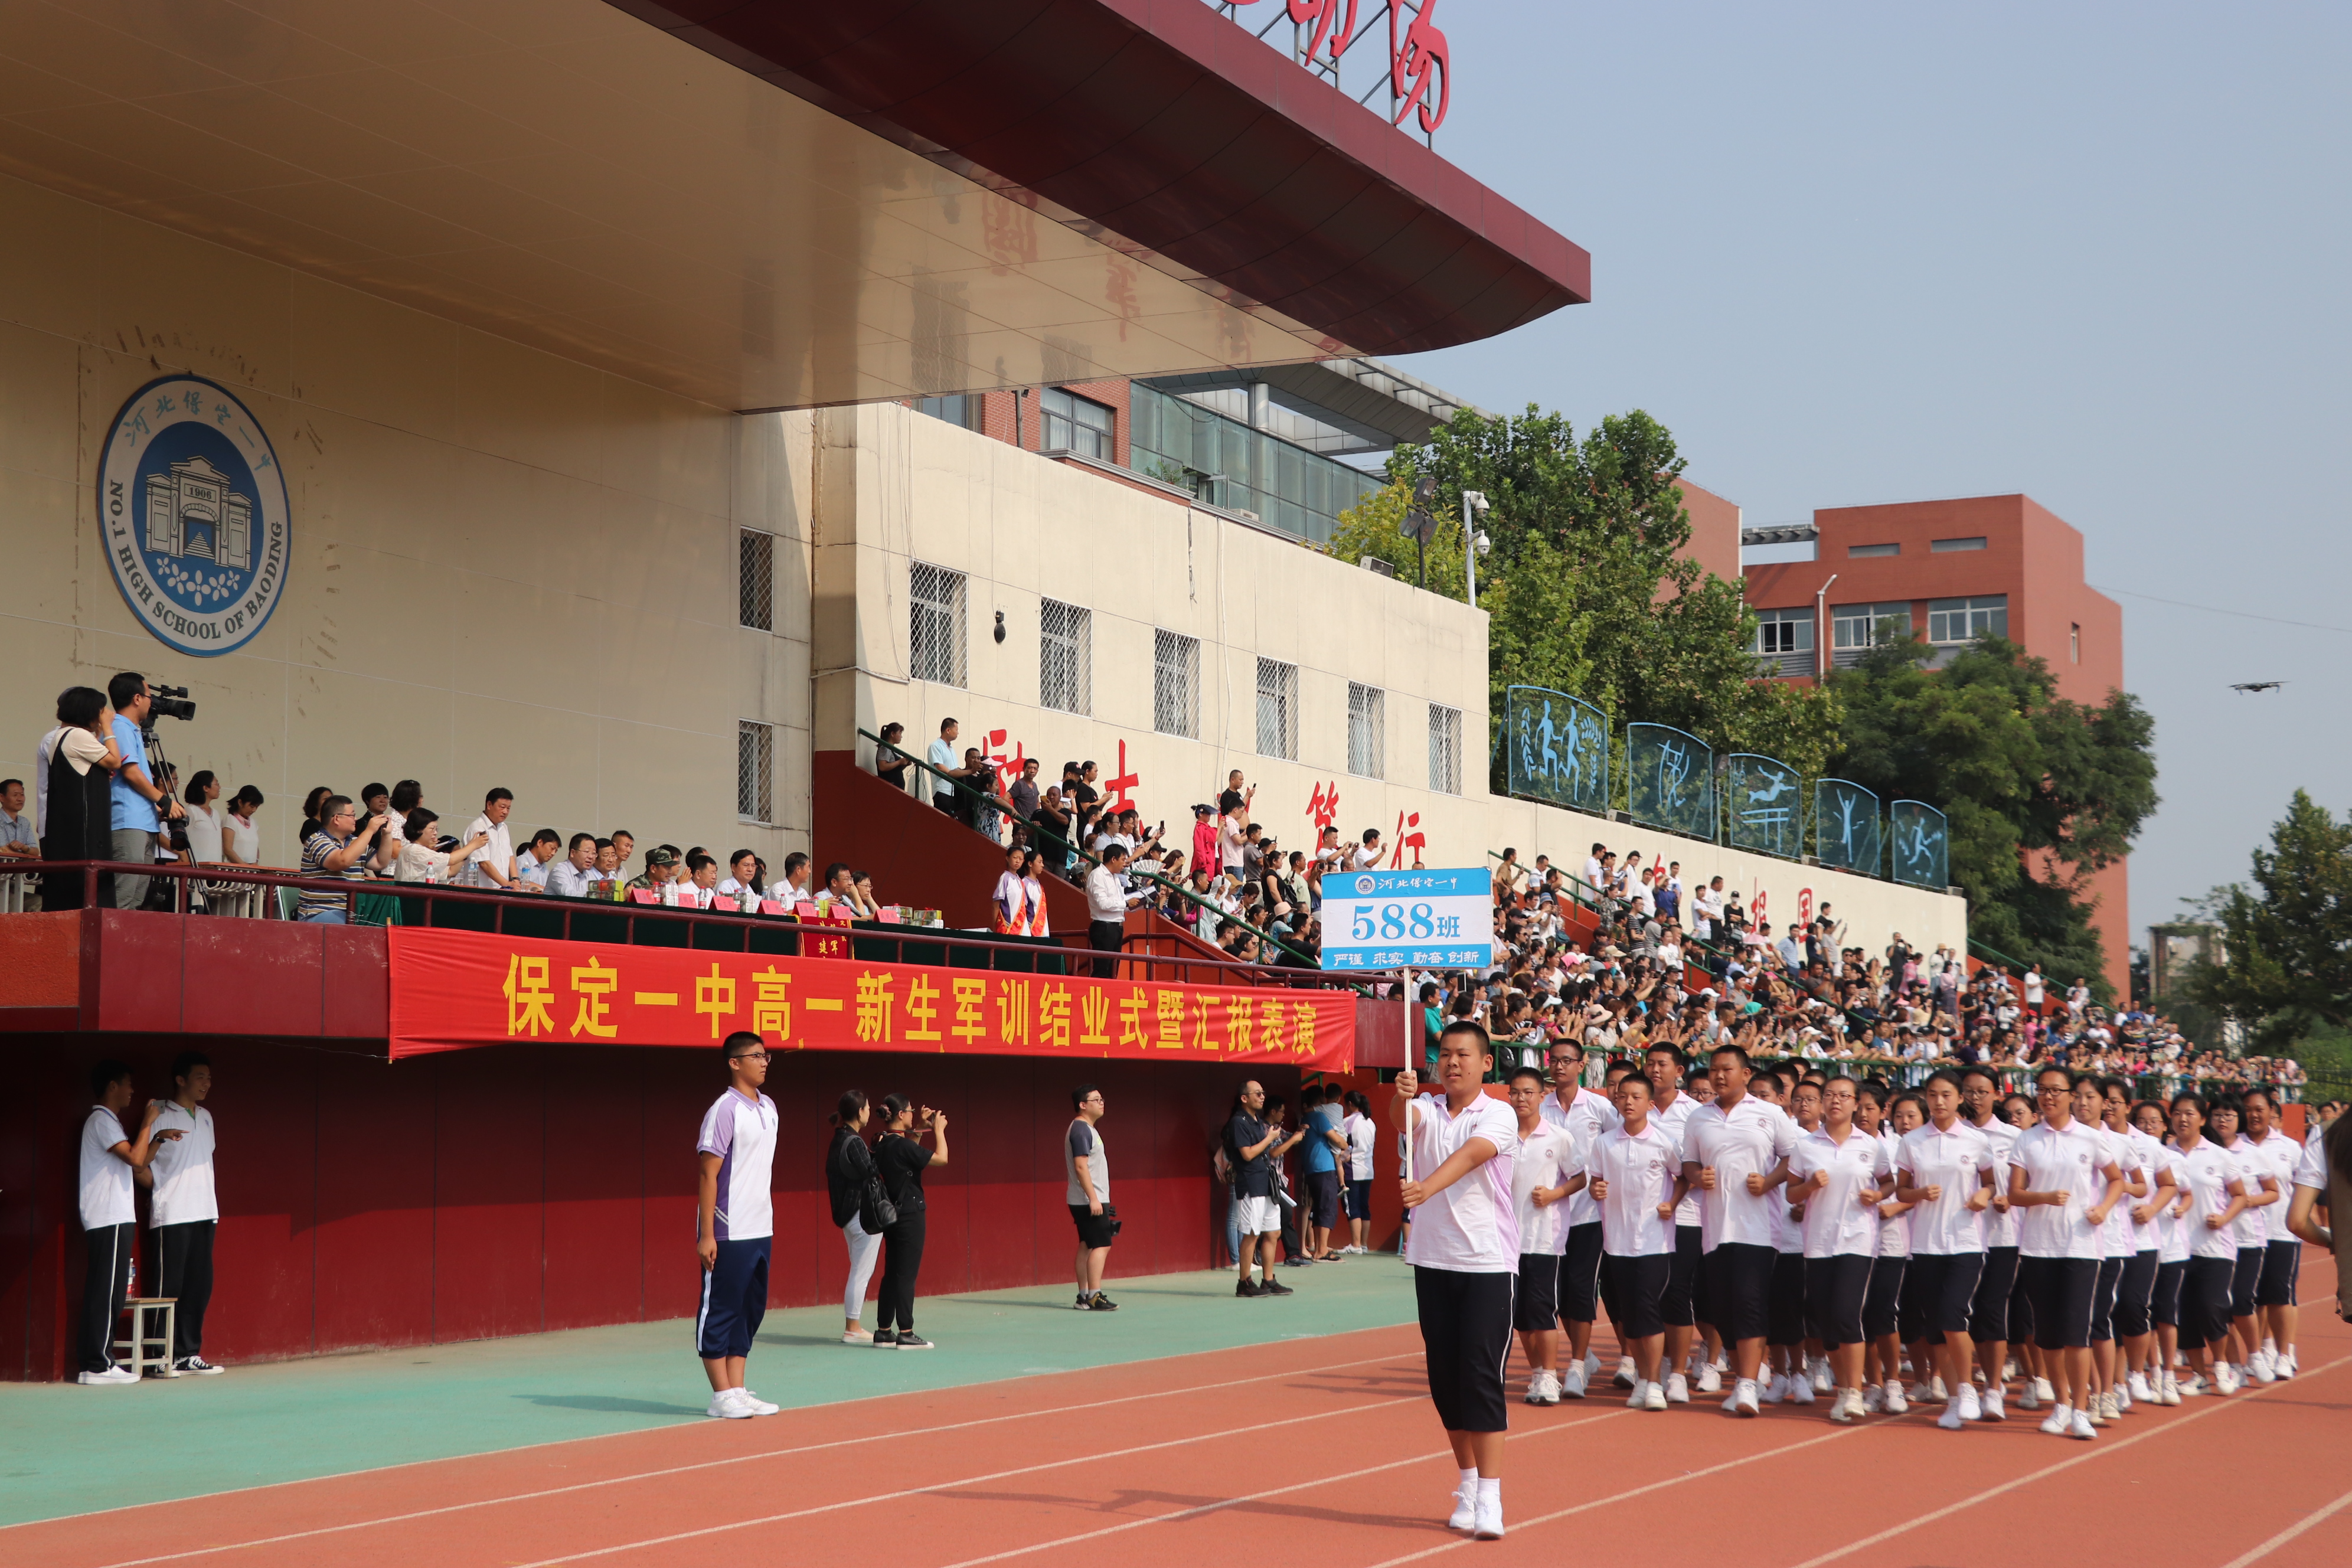 由保定一中国旗班完成升国旗仪式后,军训结业跑操和啦啦操表演等项目